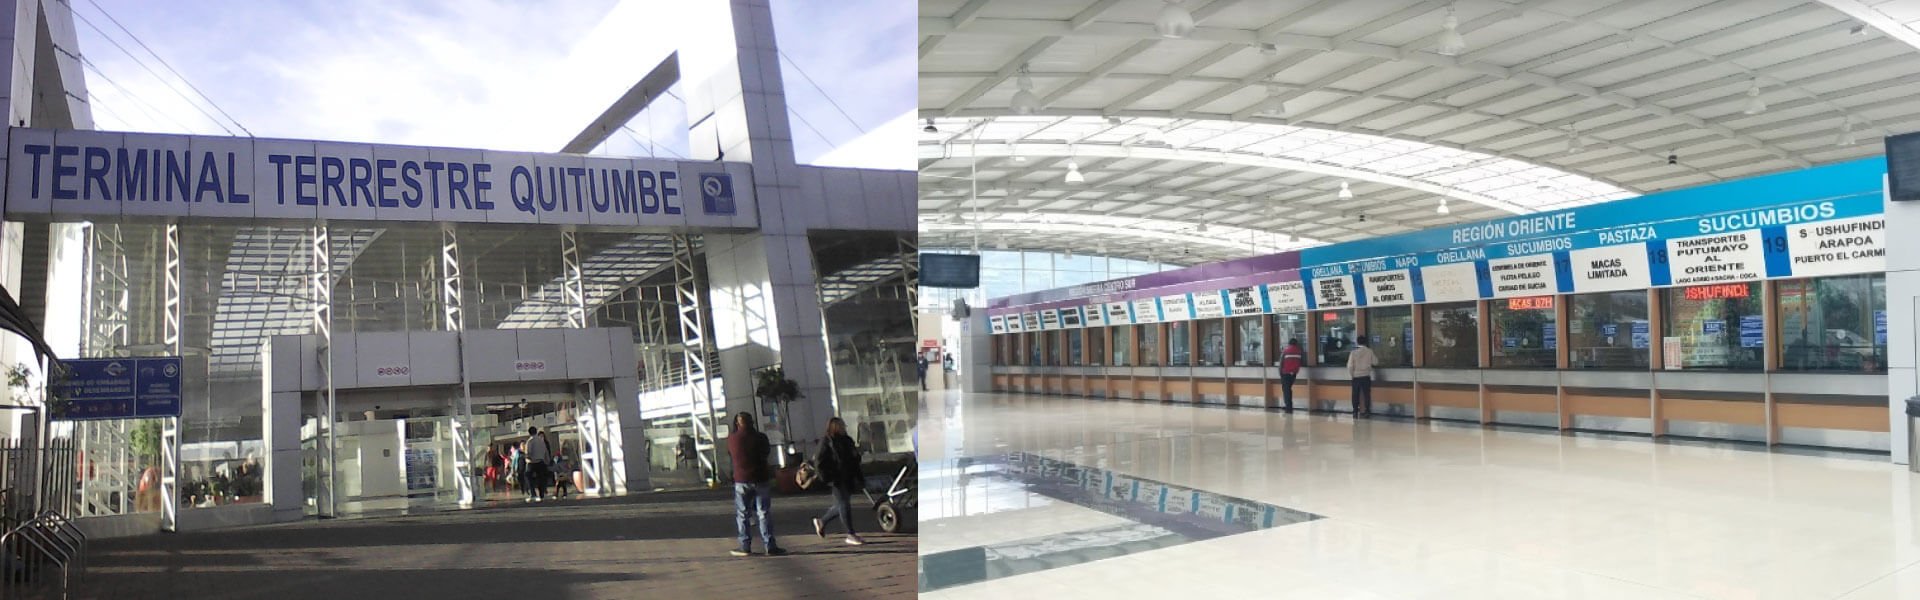 Terminal Terrestre Quitumbe